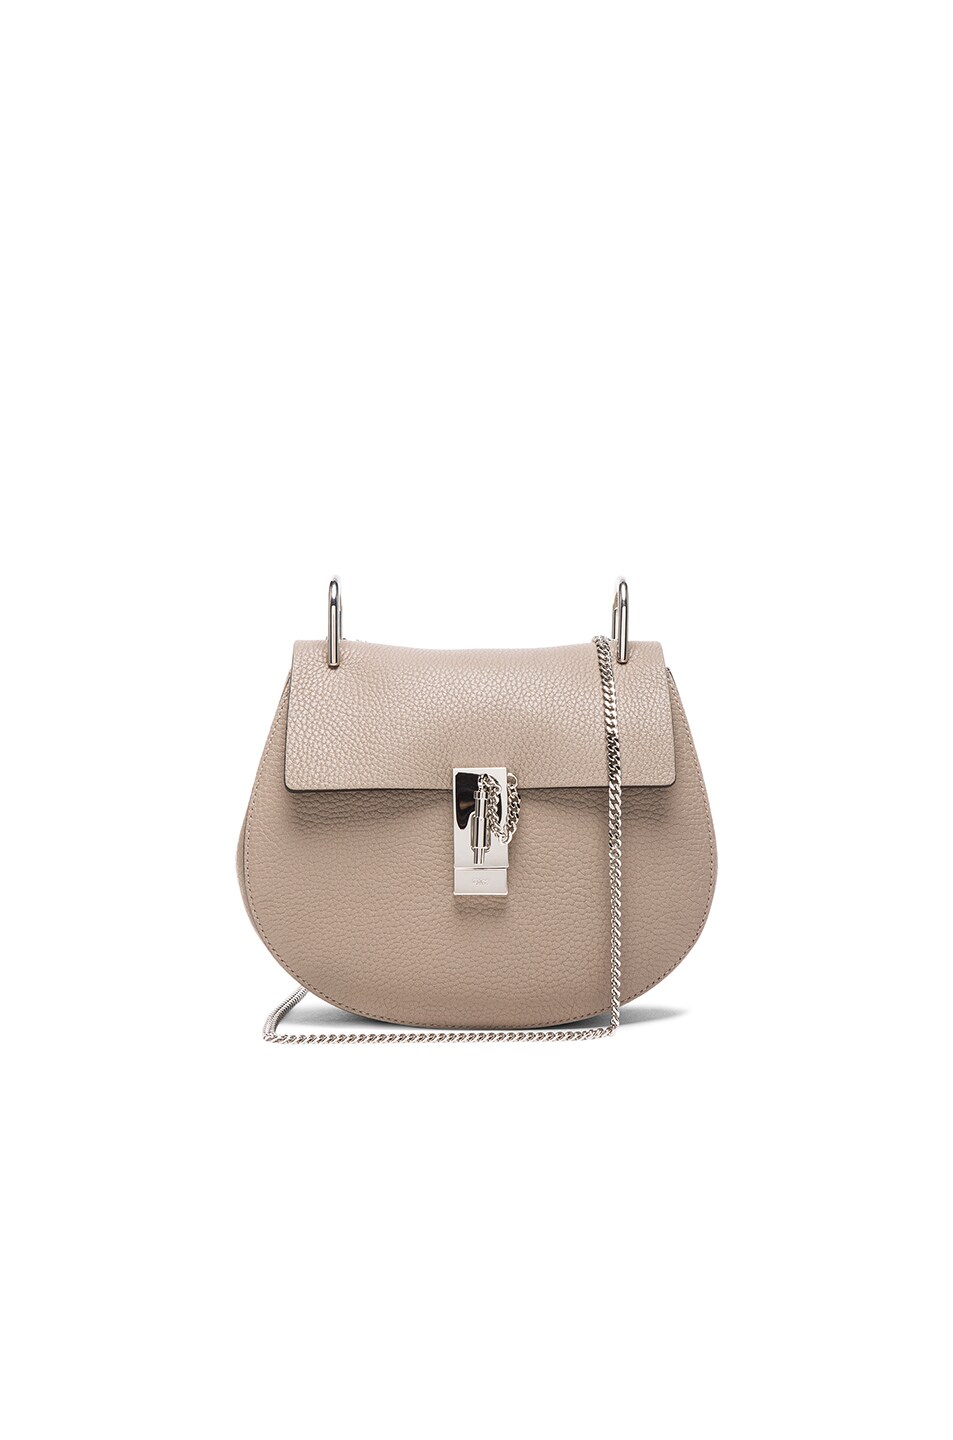 Chloe Small Drew Grain Leather \u0026amp; Calfskin Bag in Motty Grey | FWRD  